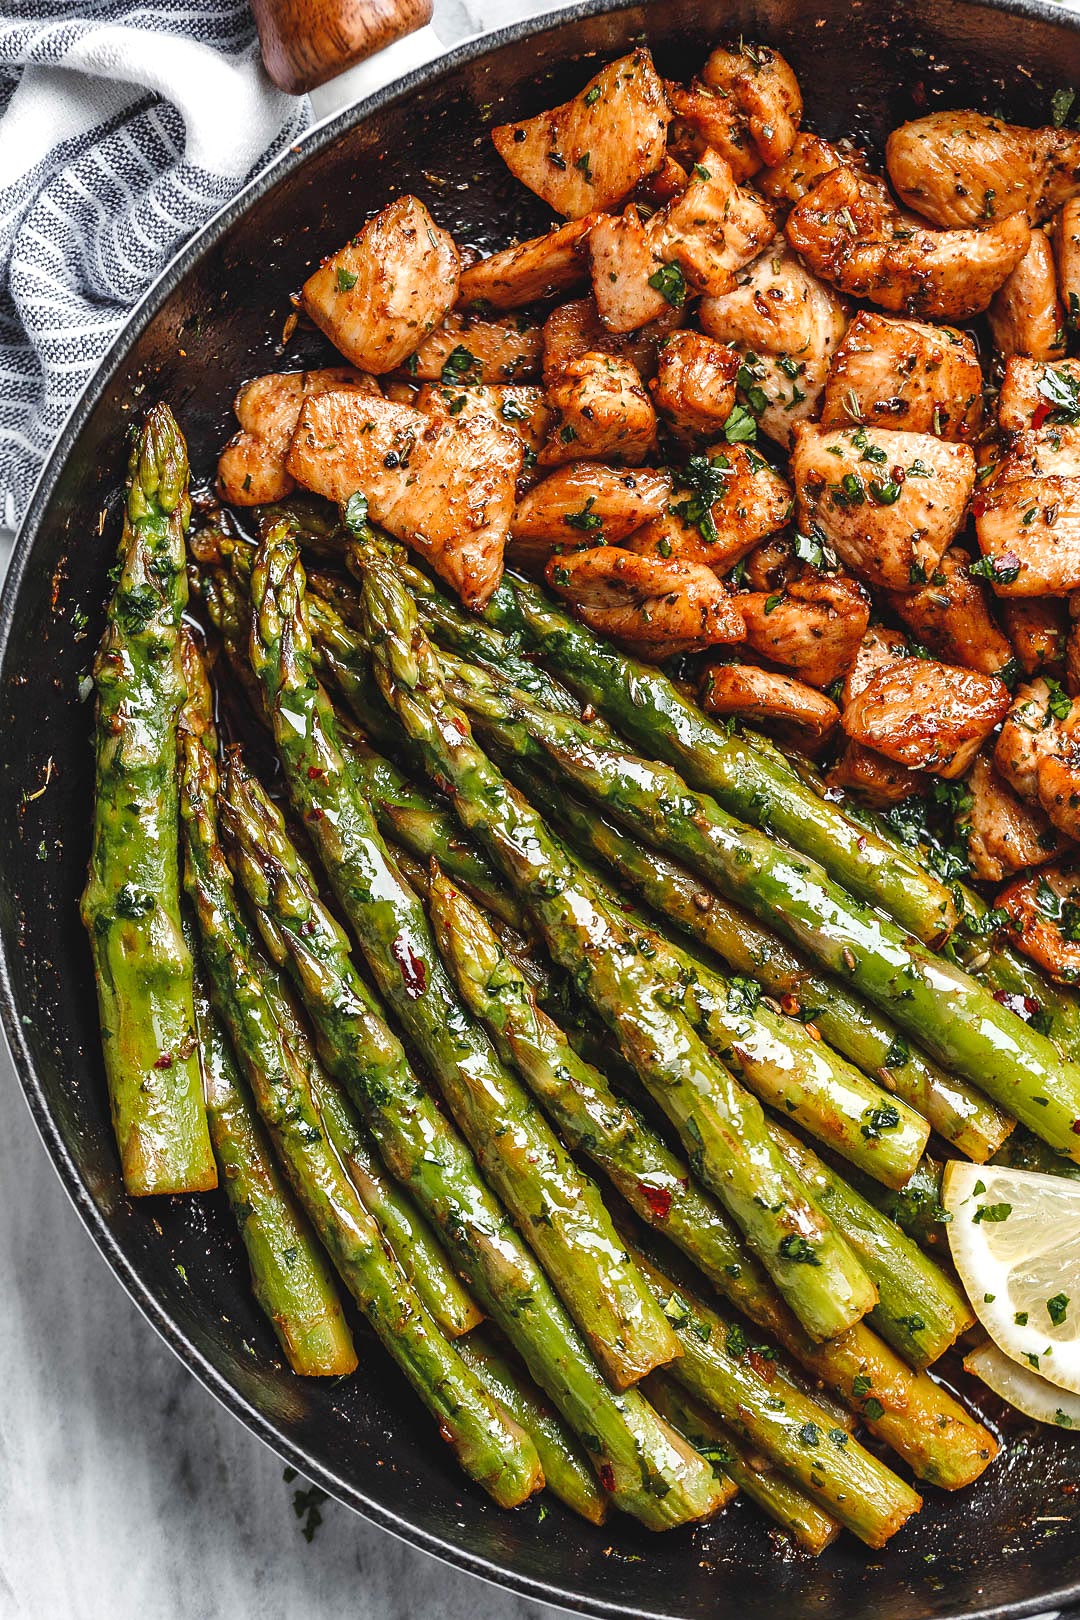 Garlic Butter Chicken Bites and Asparagus Recipe – Best Chicken Recipe ...